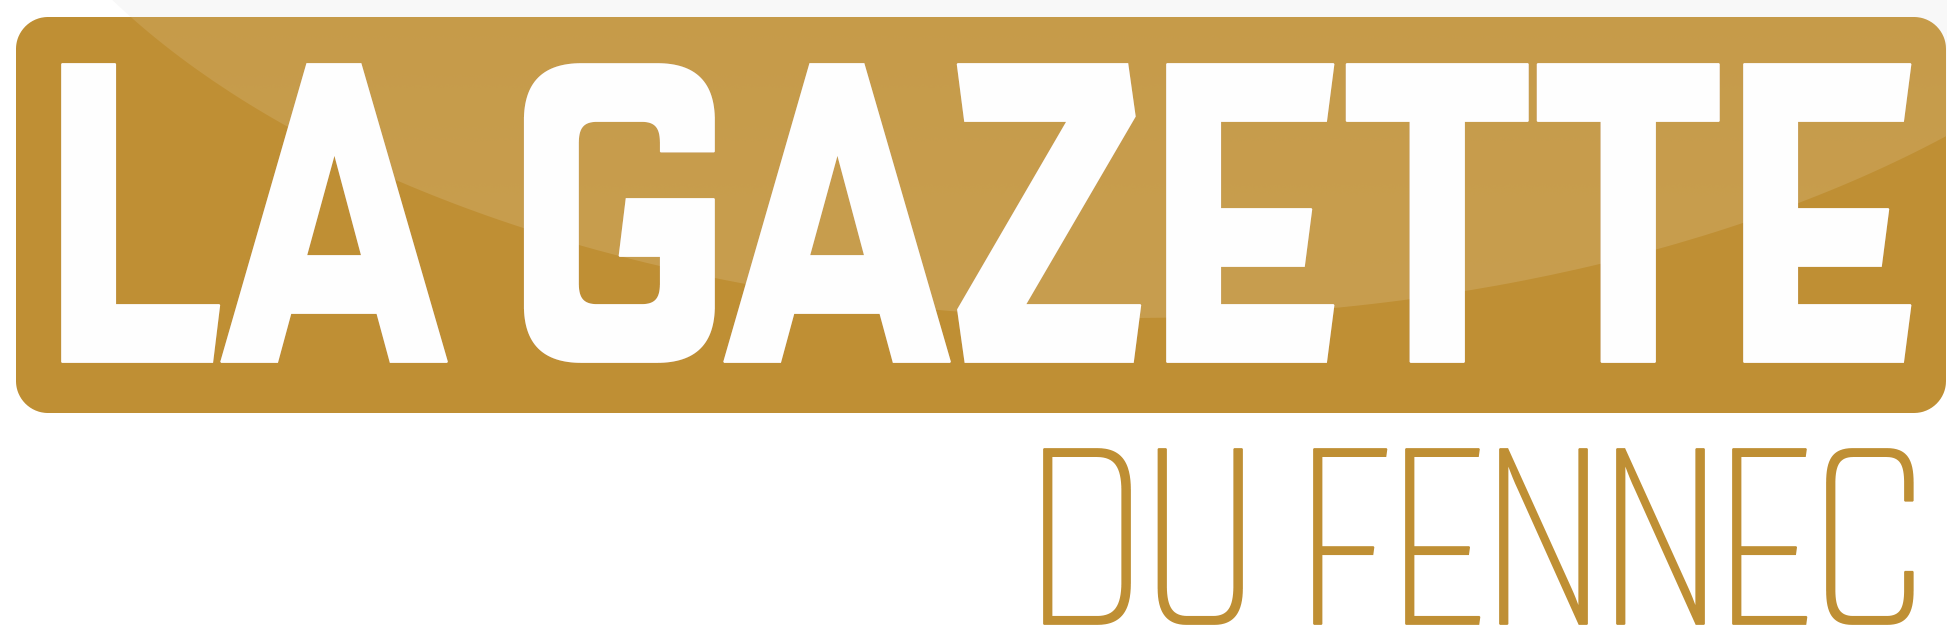 La Gazette du Fennec